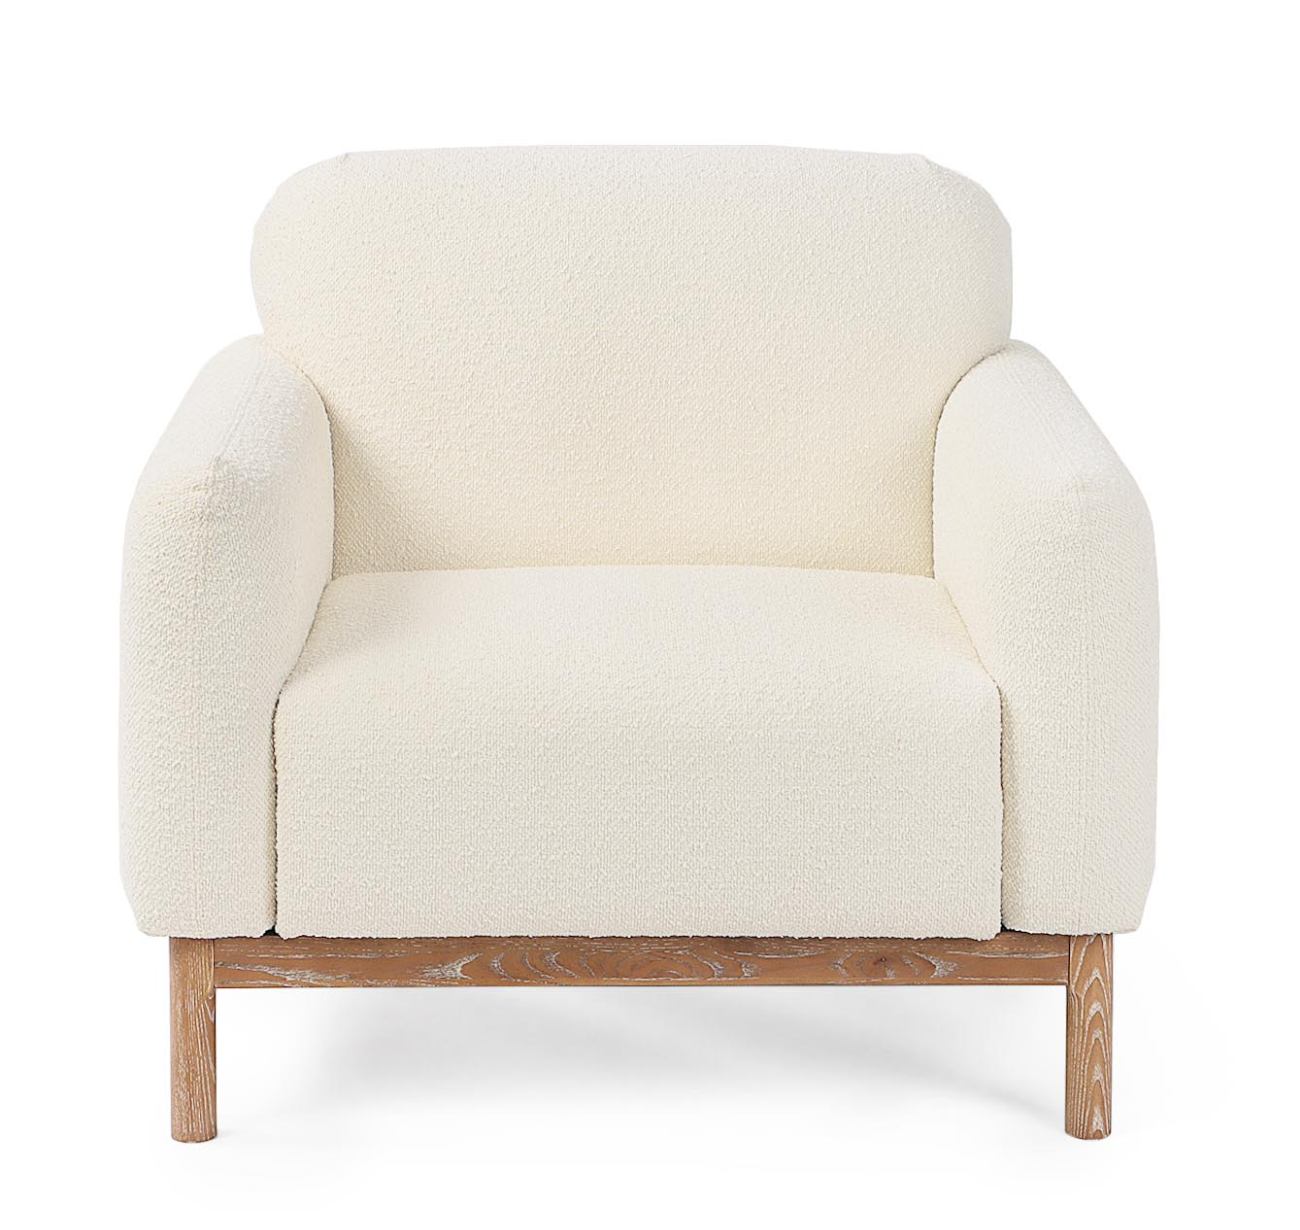 Der Sessel Detroit überzeugt mit seinem modernen Stil. Gefertigt wurde er aus Bouclè-Stoff, welcher einen Creme Farbton besitzt. Das Gestell ist aus Eschenholz und hat eine natürliche Farbe. Der Sessel verfügt über eine Armlehne.